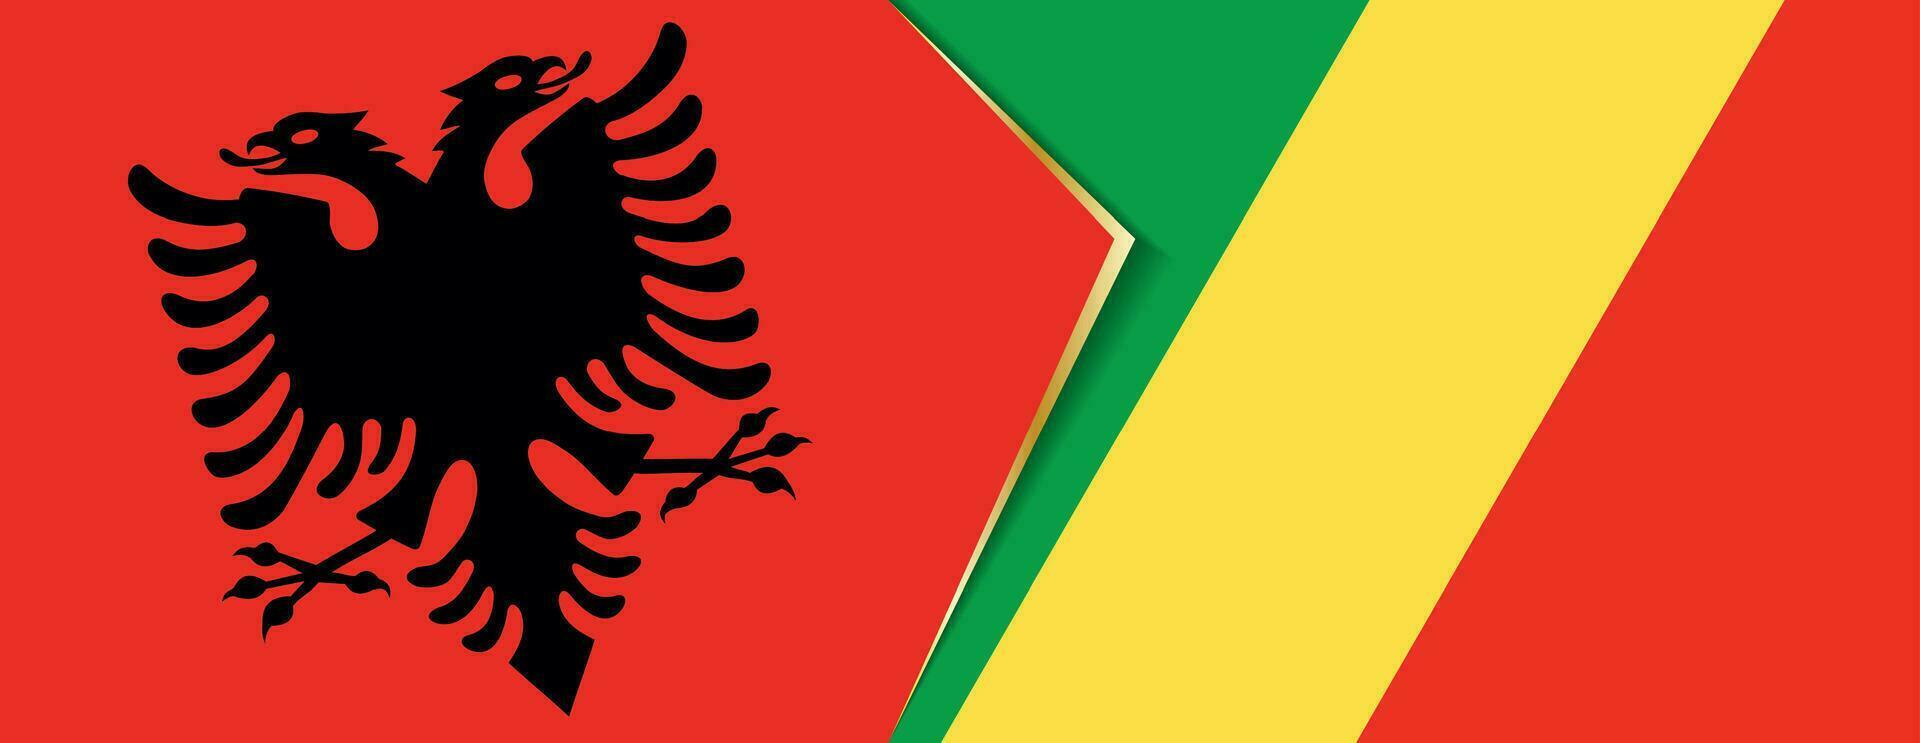 Albania y banderas del congo, dos vector banderas